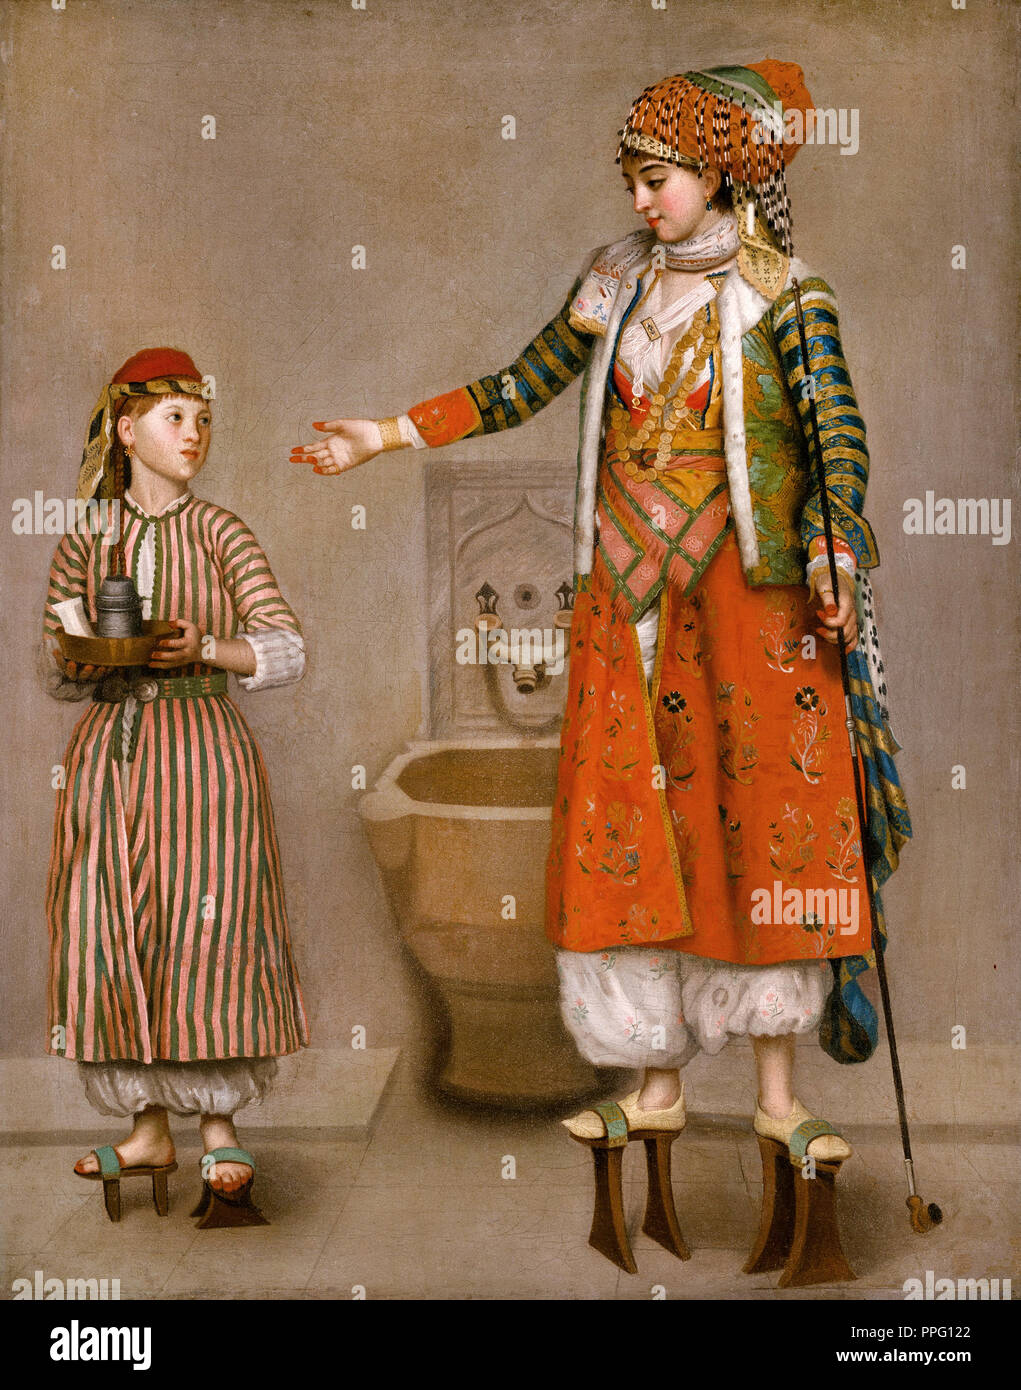 Jean-étienne Liotard, une femme turque et son serviteur 1750 Huile sur toile. Nelson-Atkins Museum of Art, Kansas City, Missouri, États-Unis. Banque D'Images